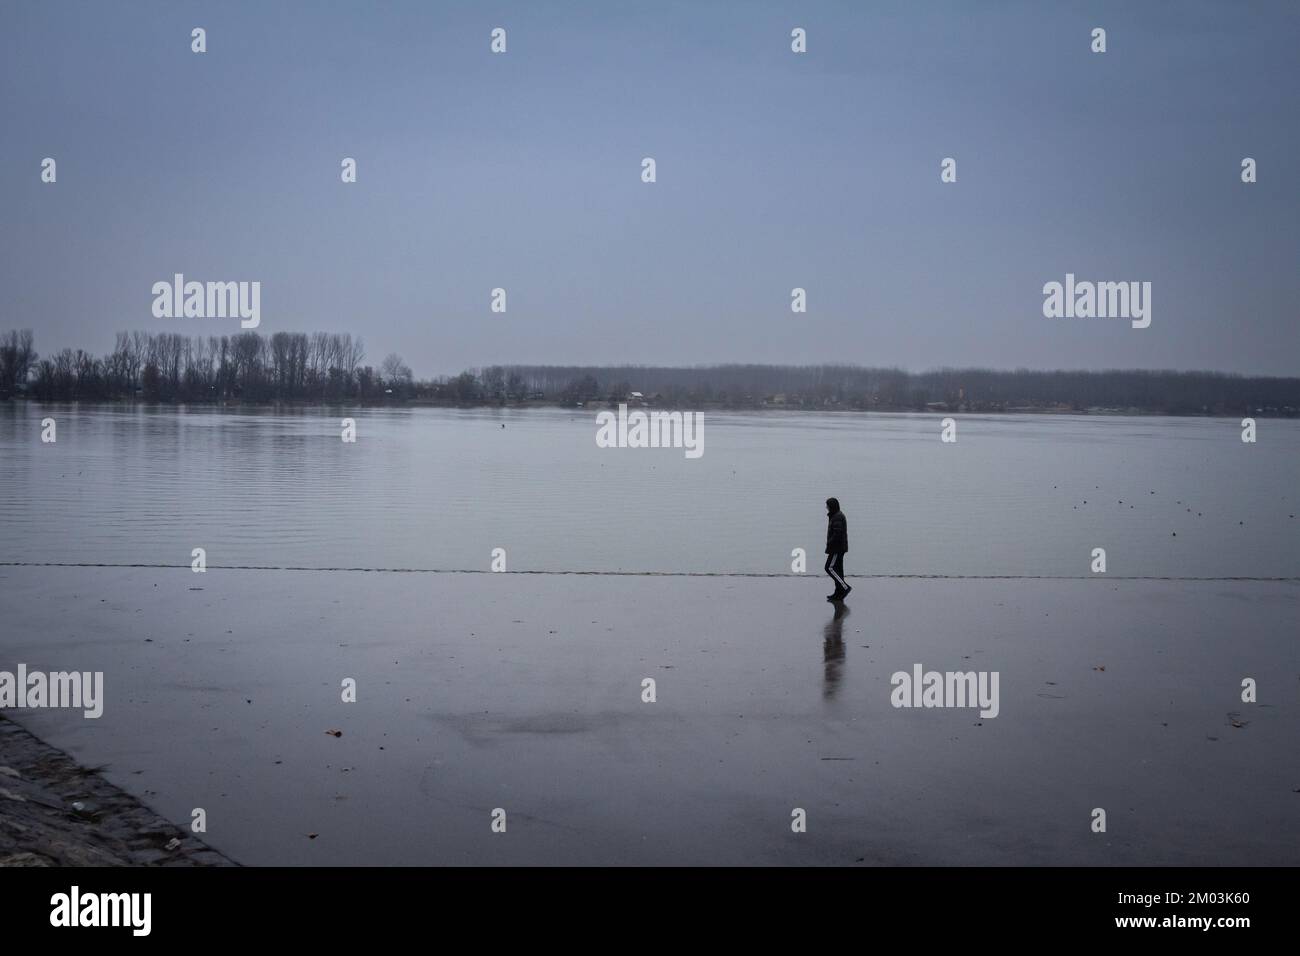 Imagen de un hombre que tiene un paseo solo cerca del río Danubio, mientras que la mayor parte del paisaje se está desvaneciendo debido a un fuerte smog y la lluvia, en el Zemun subtropical Foto de stock